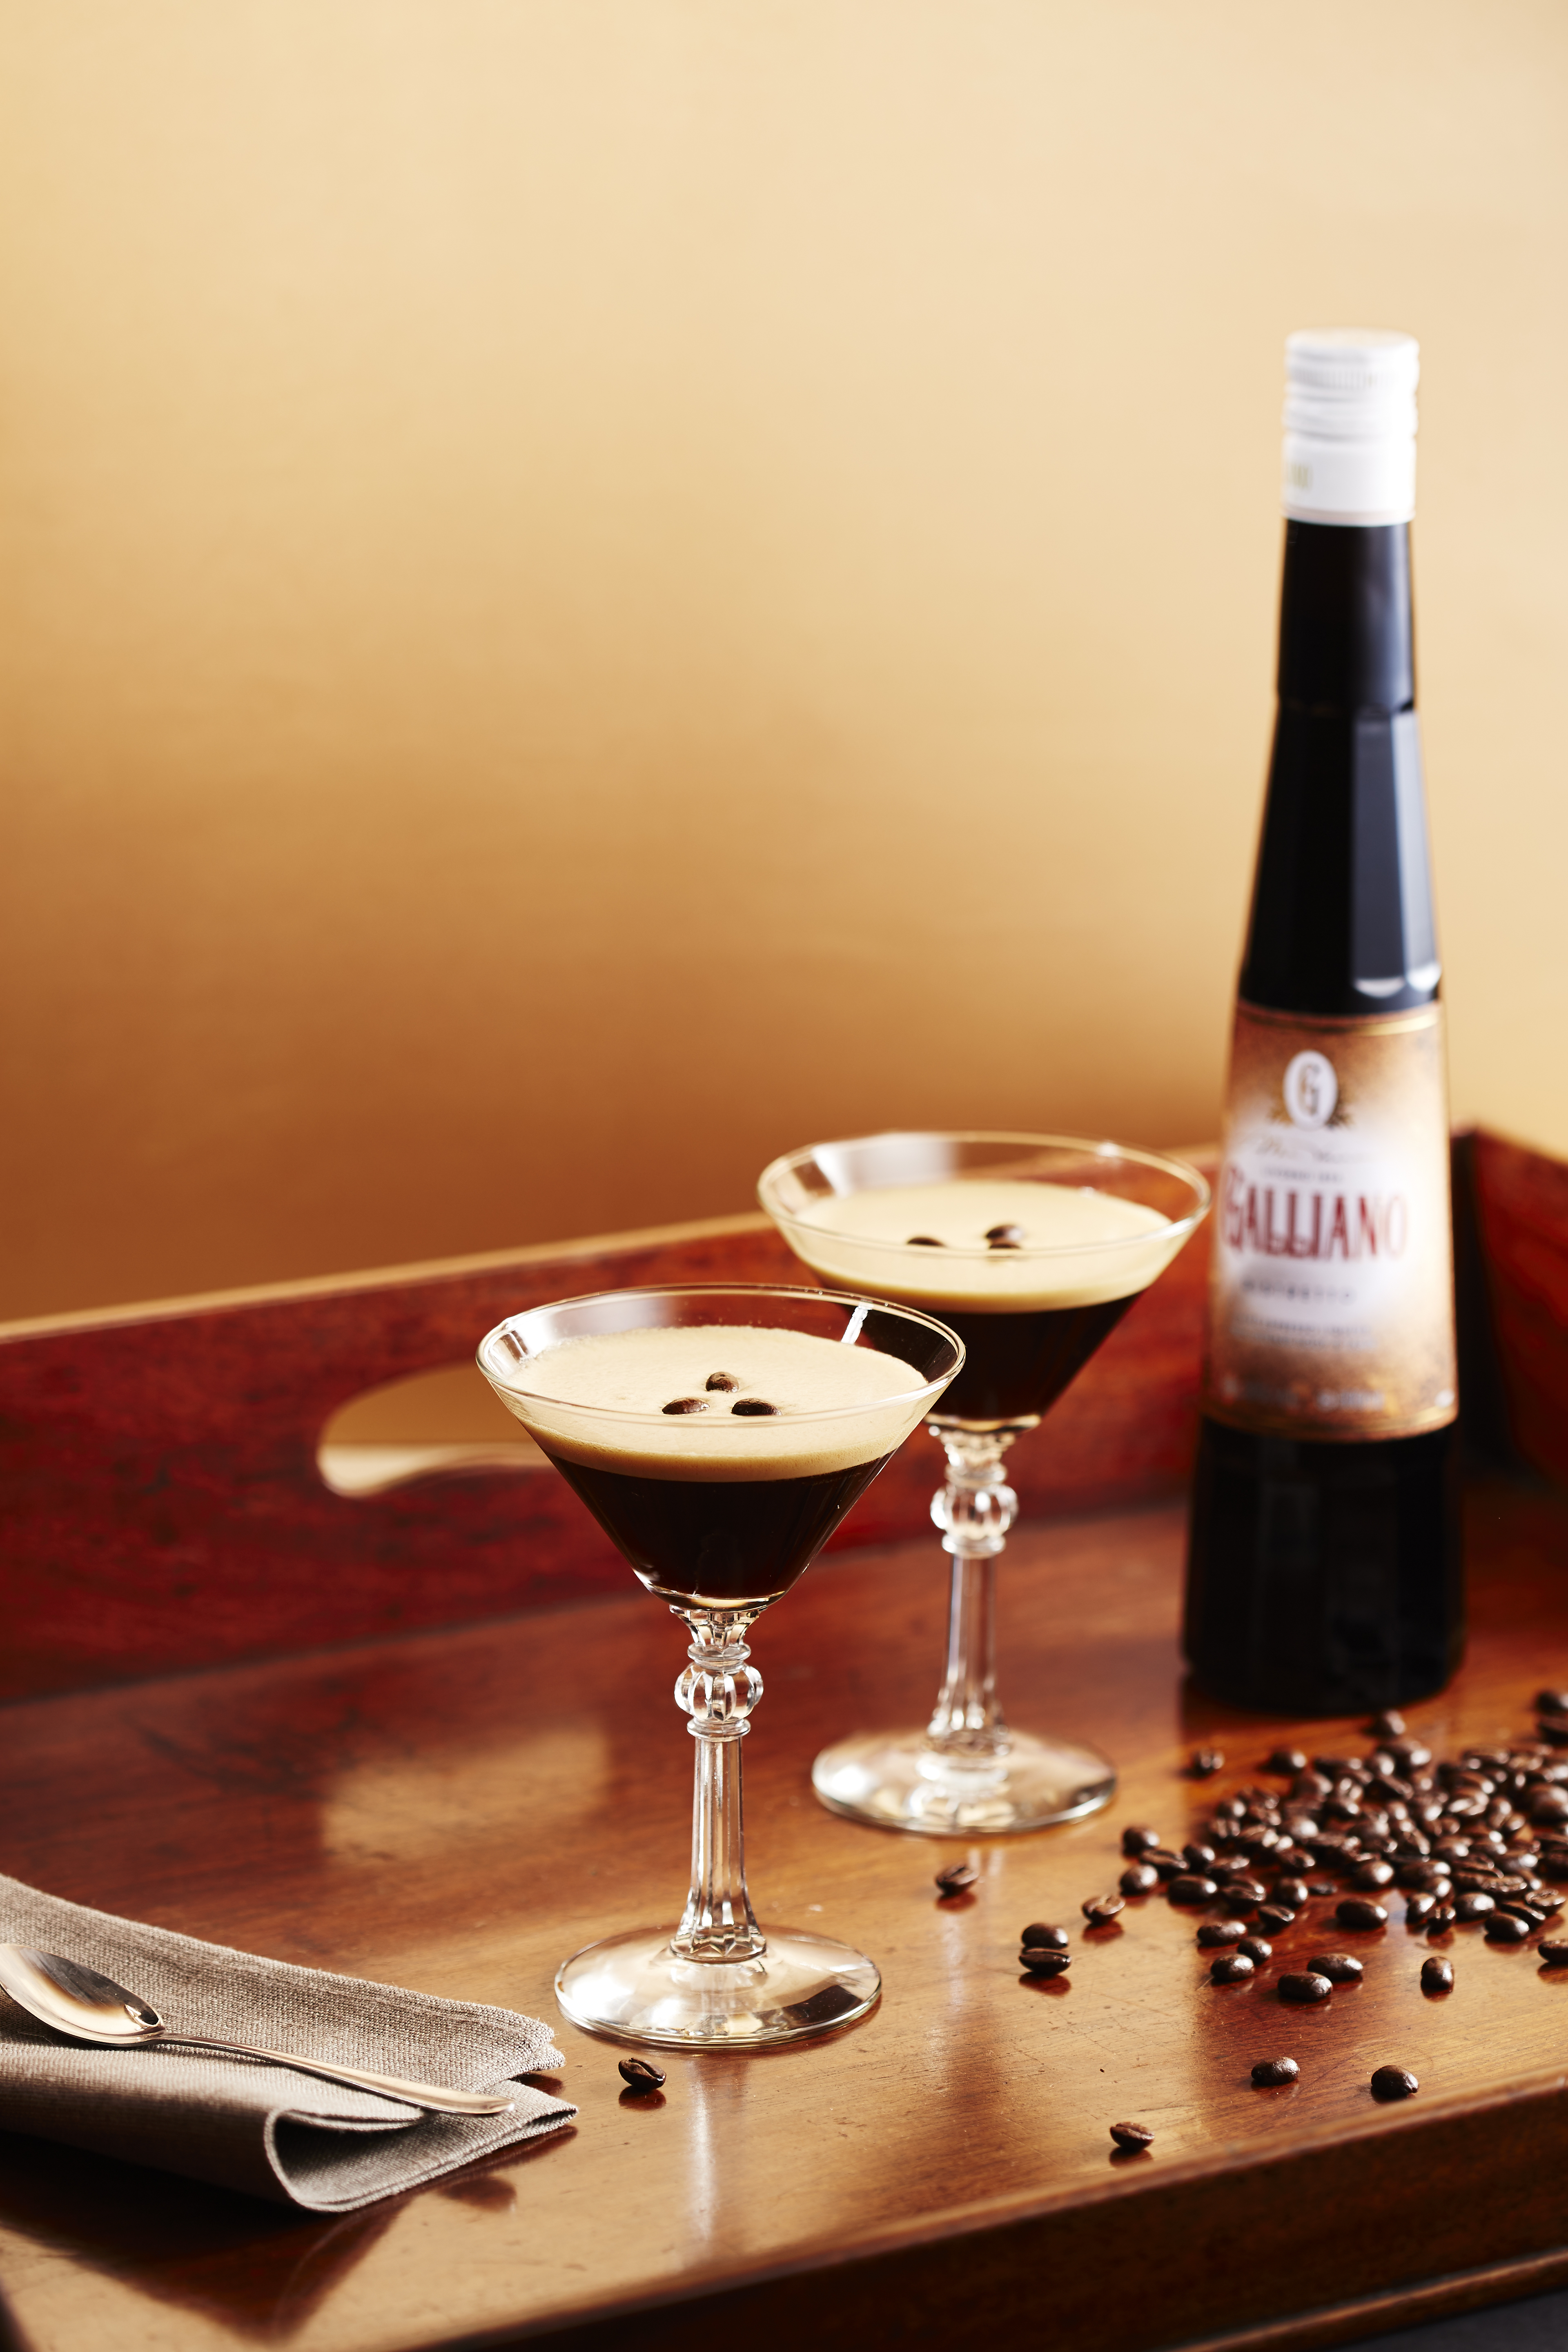 Espresso Martini Recipe - Galliano